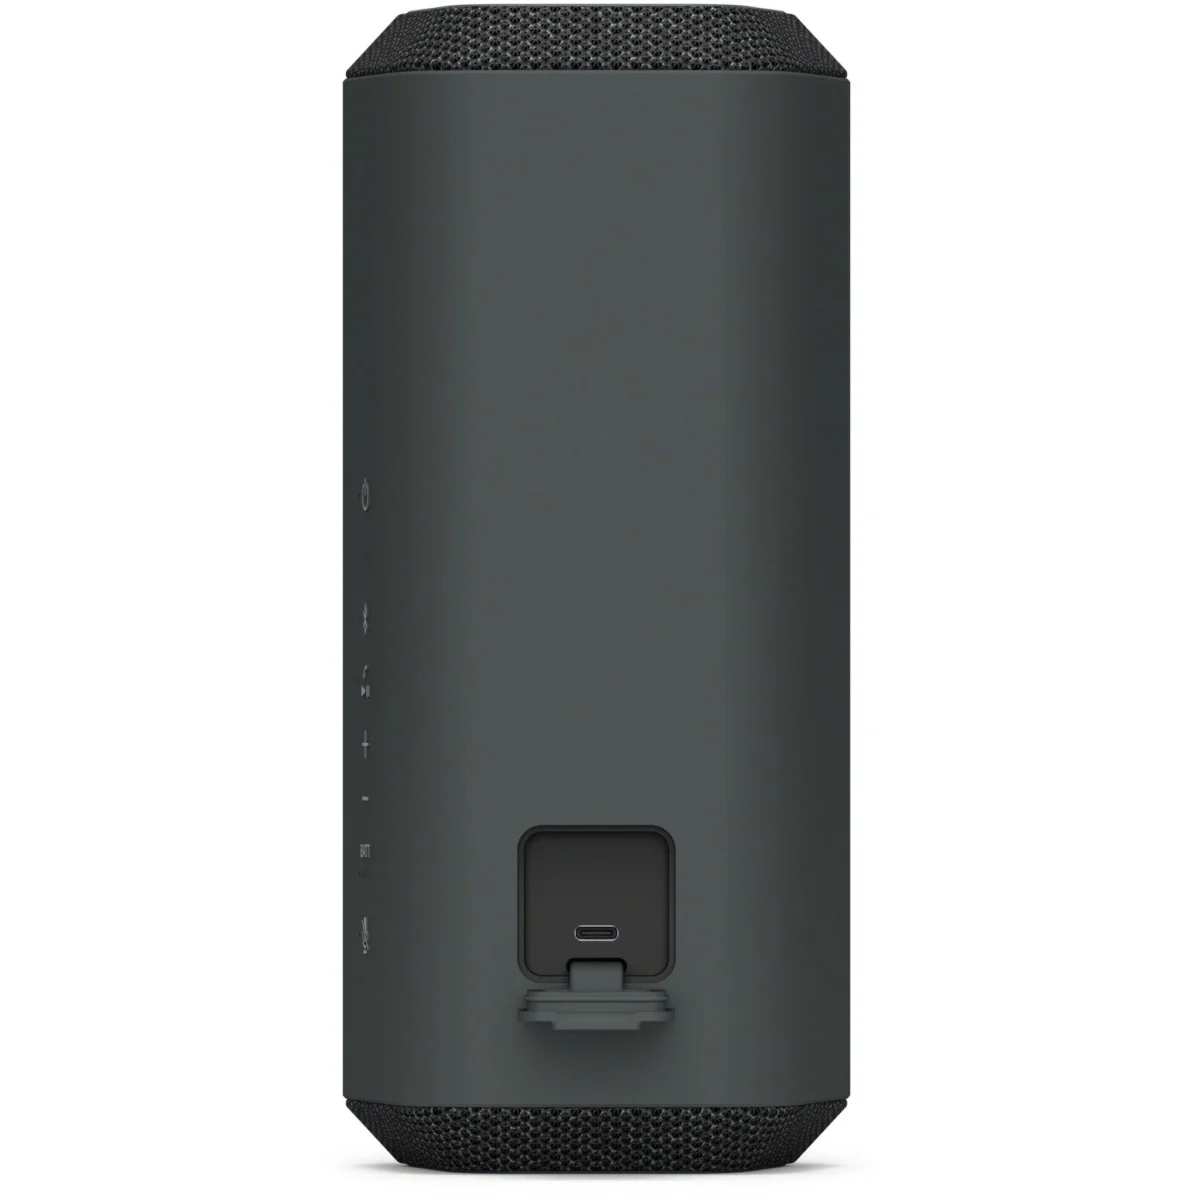 SONY SRS-XE300 Portable Wireless Speaker